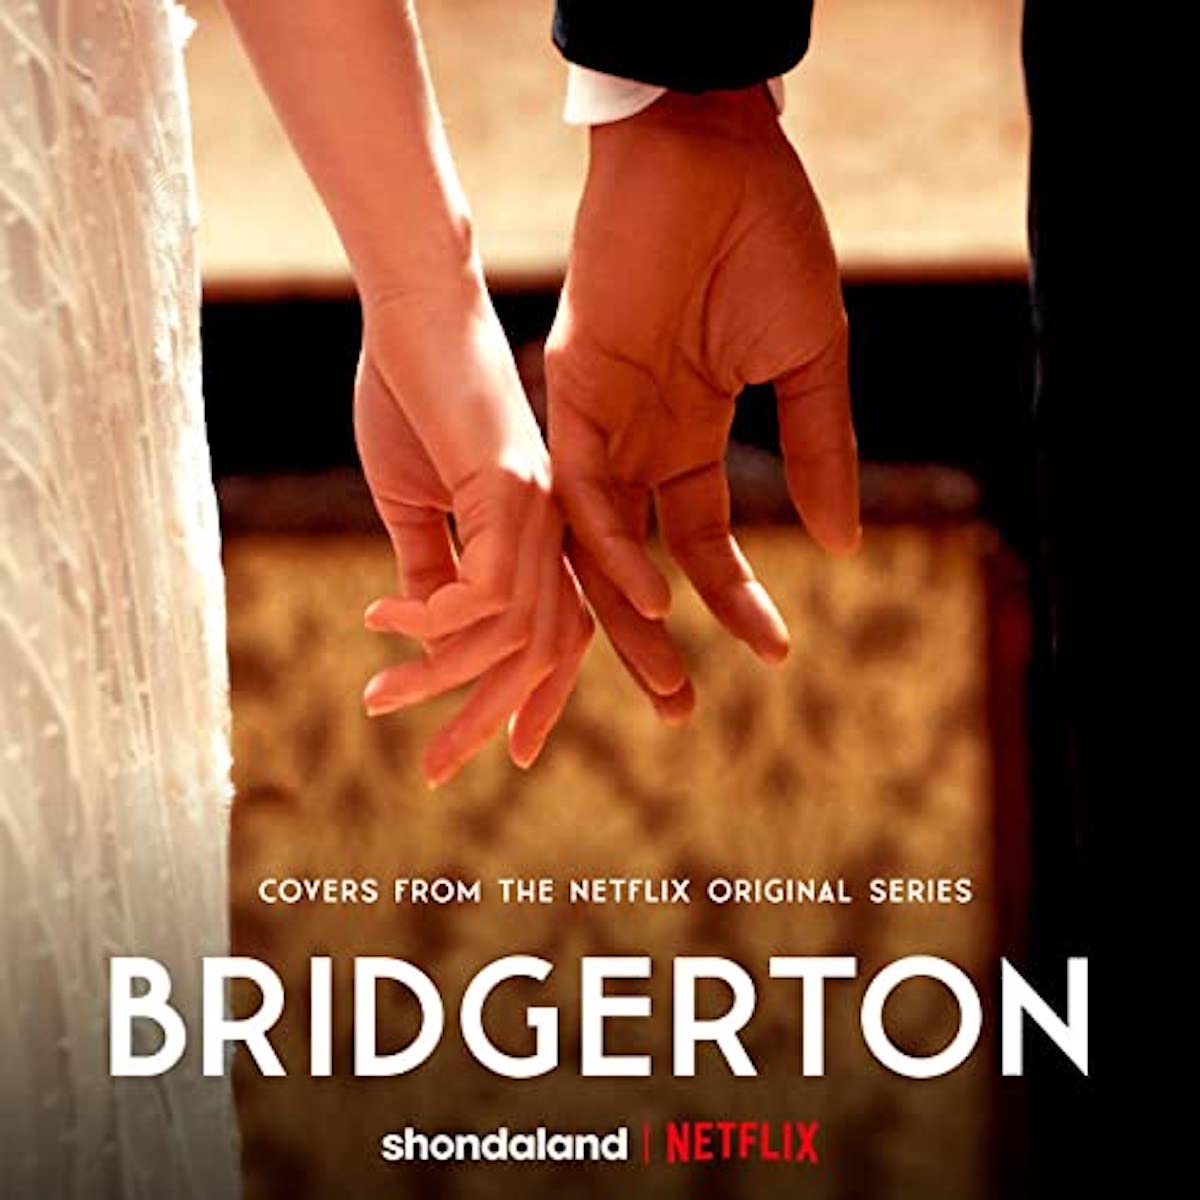 Bridgerton: Music From The Netflix Original Series